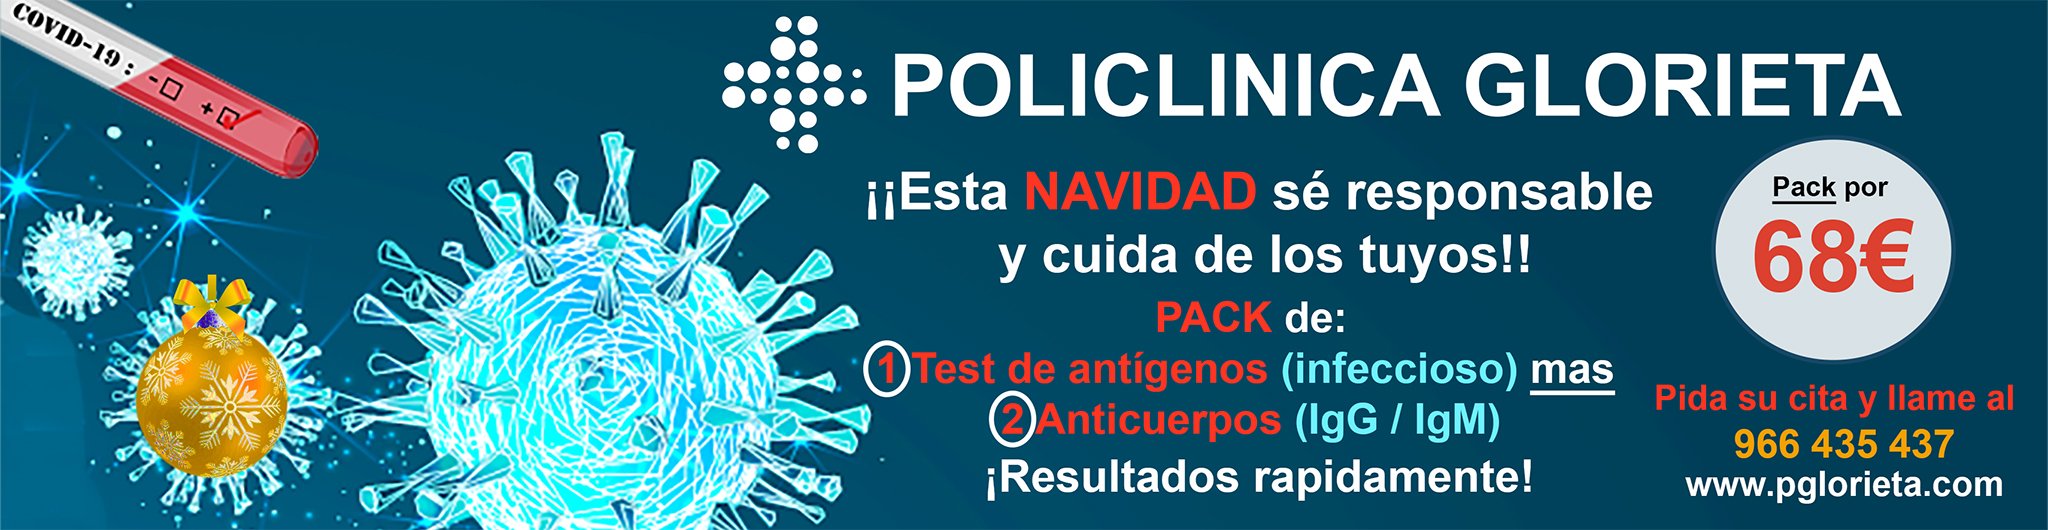 Pack de test de anticuerpos y test de antígenos en Policlínica Glorieta